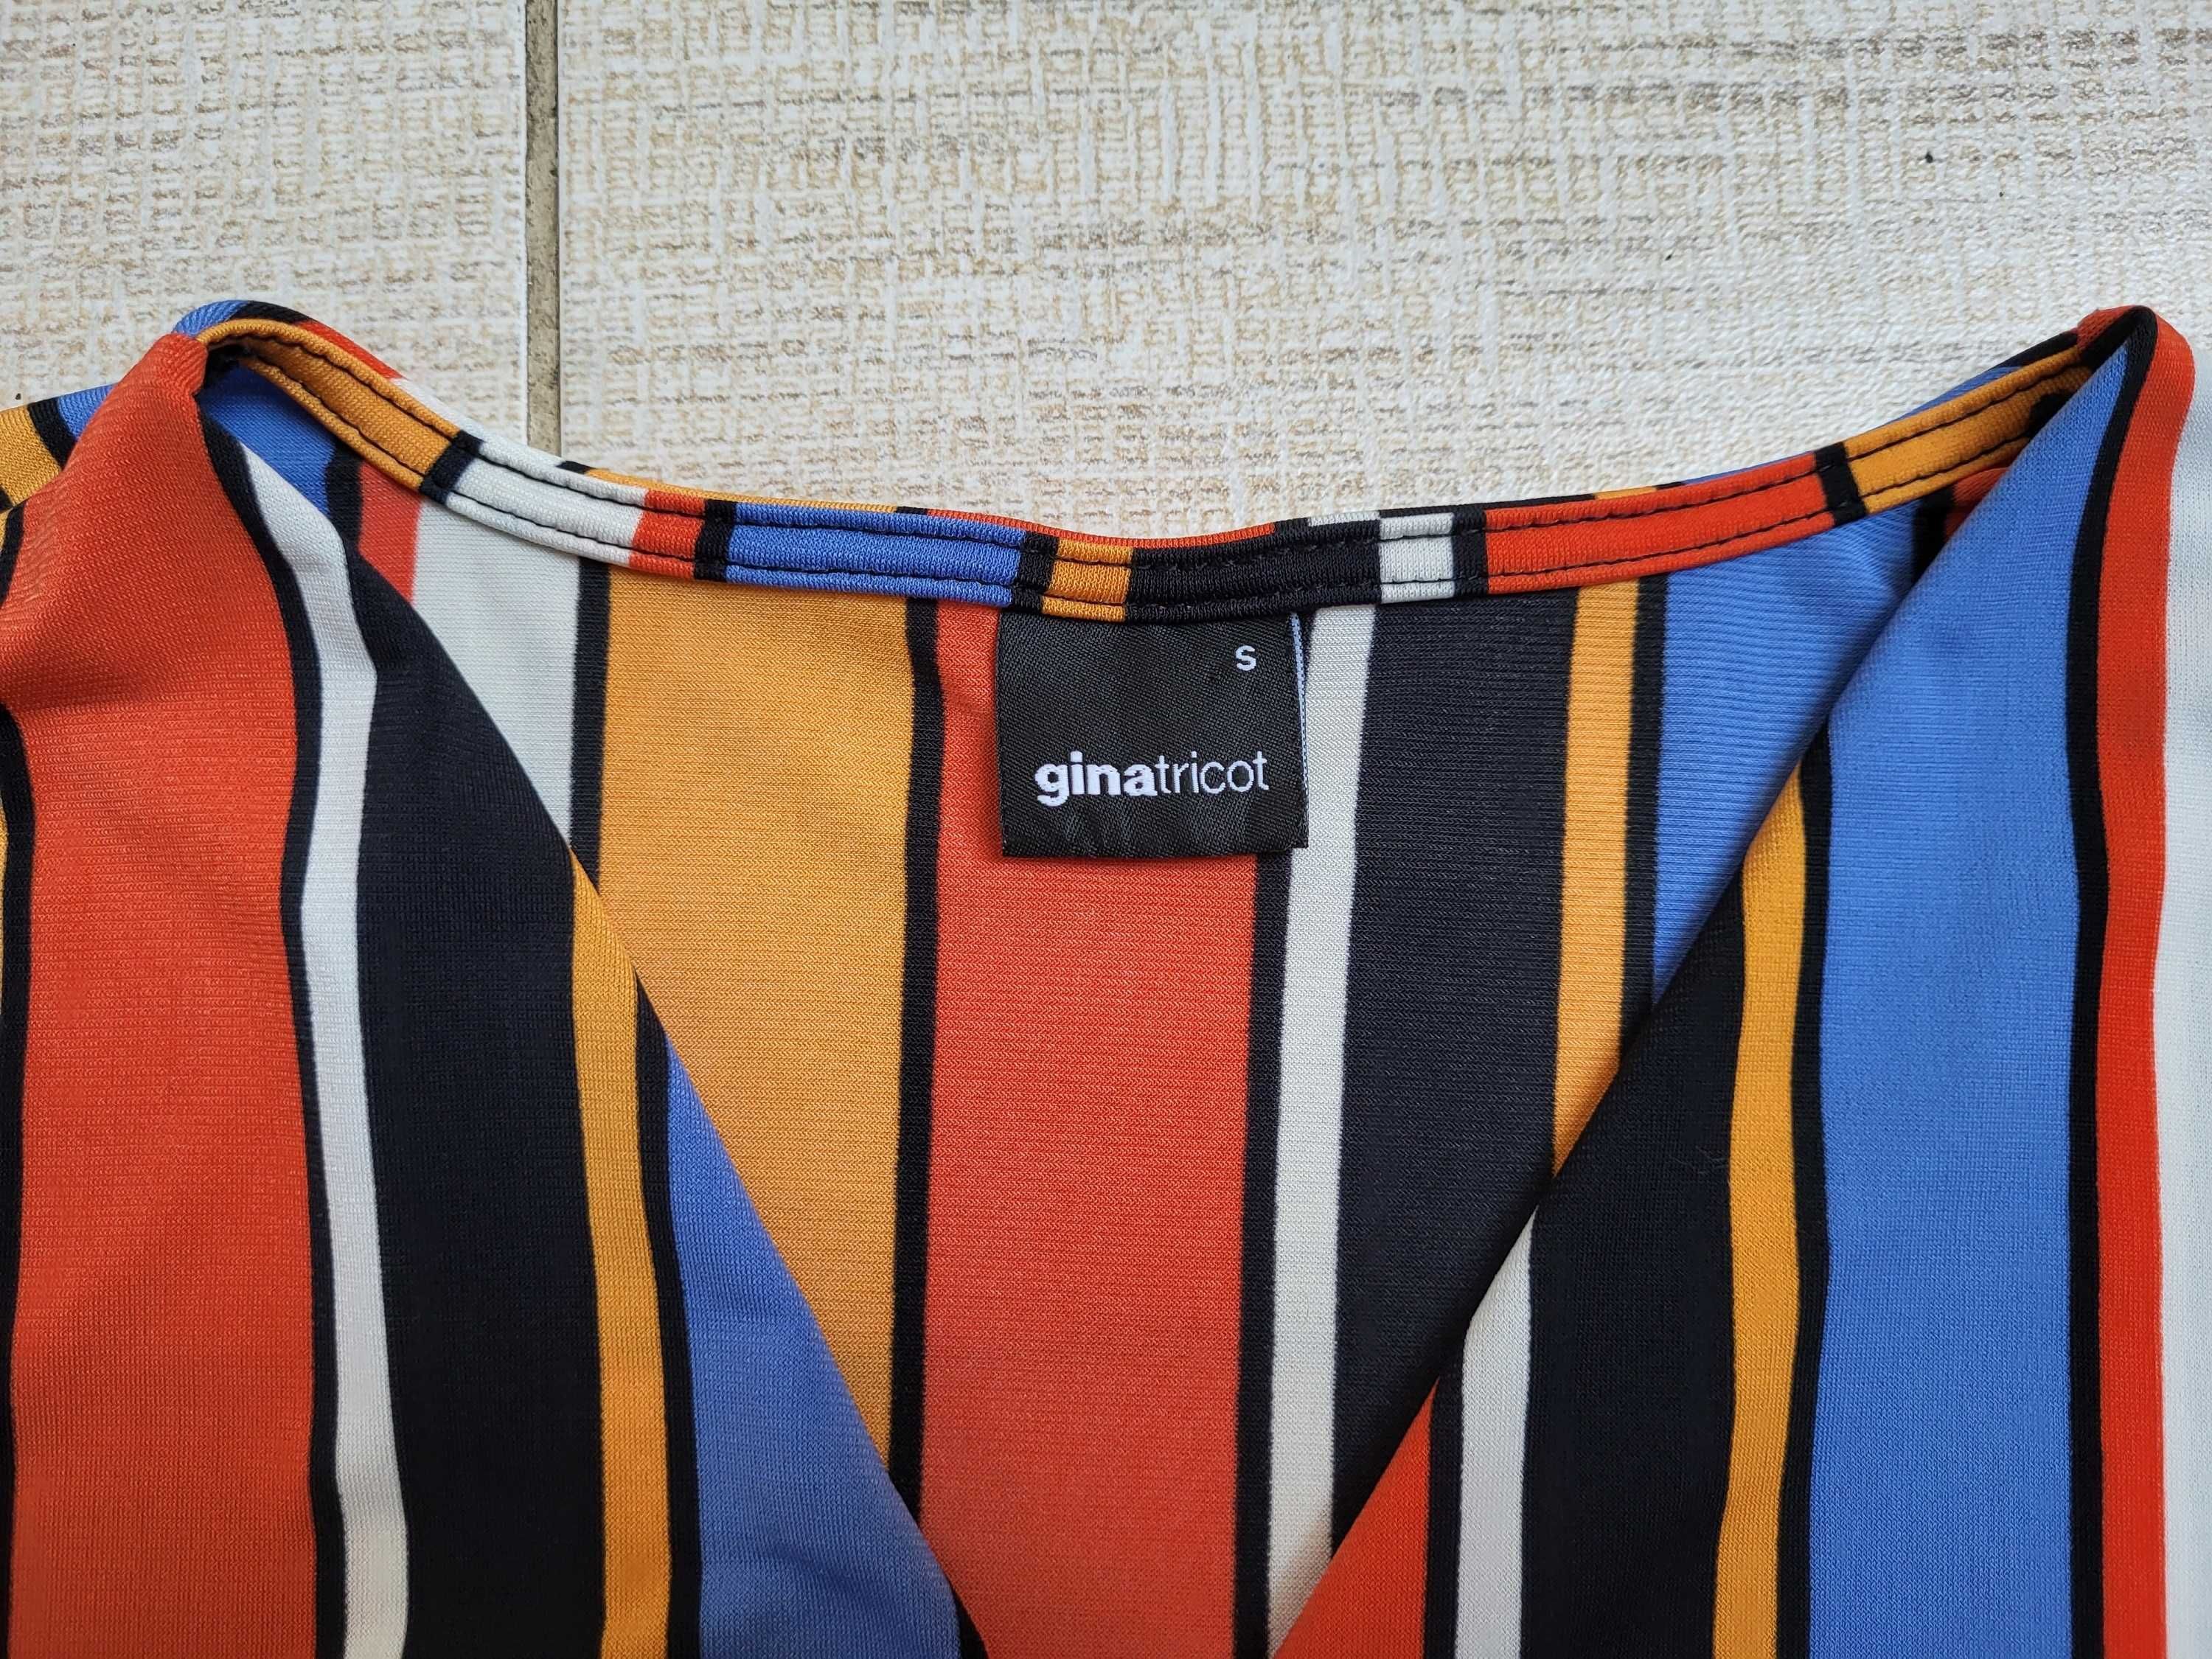 krótka bluzka w z długim rękawem vintage, retro styl Gina Tricot 36/S